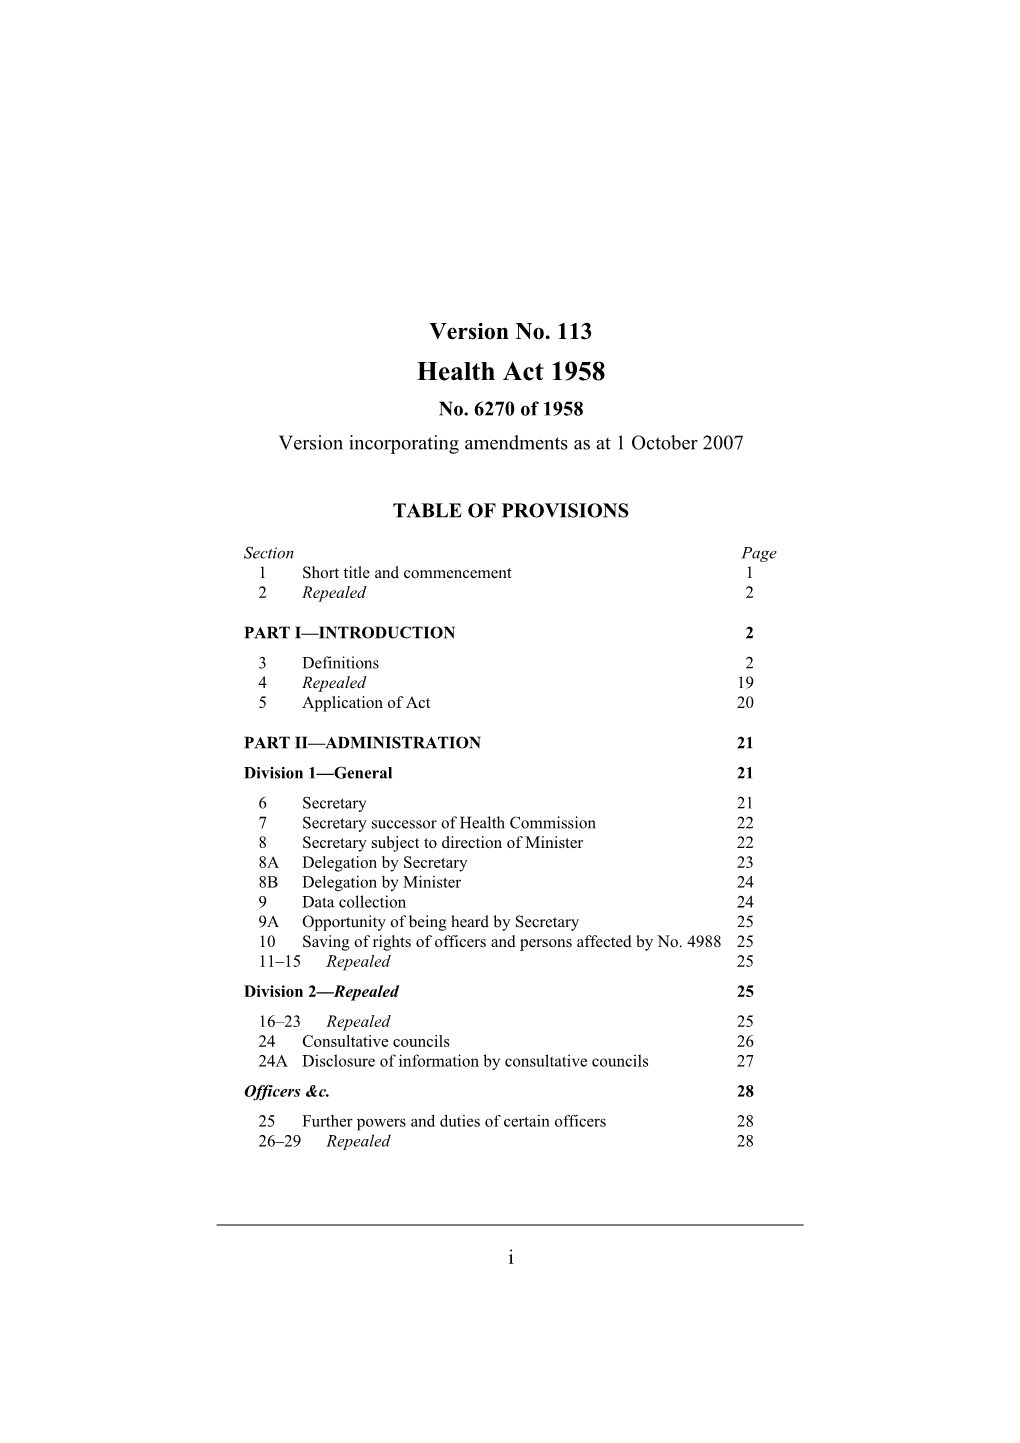 Version Incorporating Amendments As at 1 October 2007